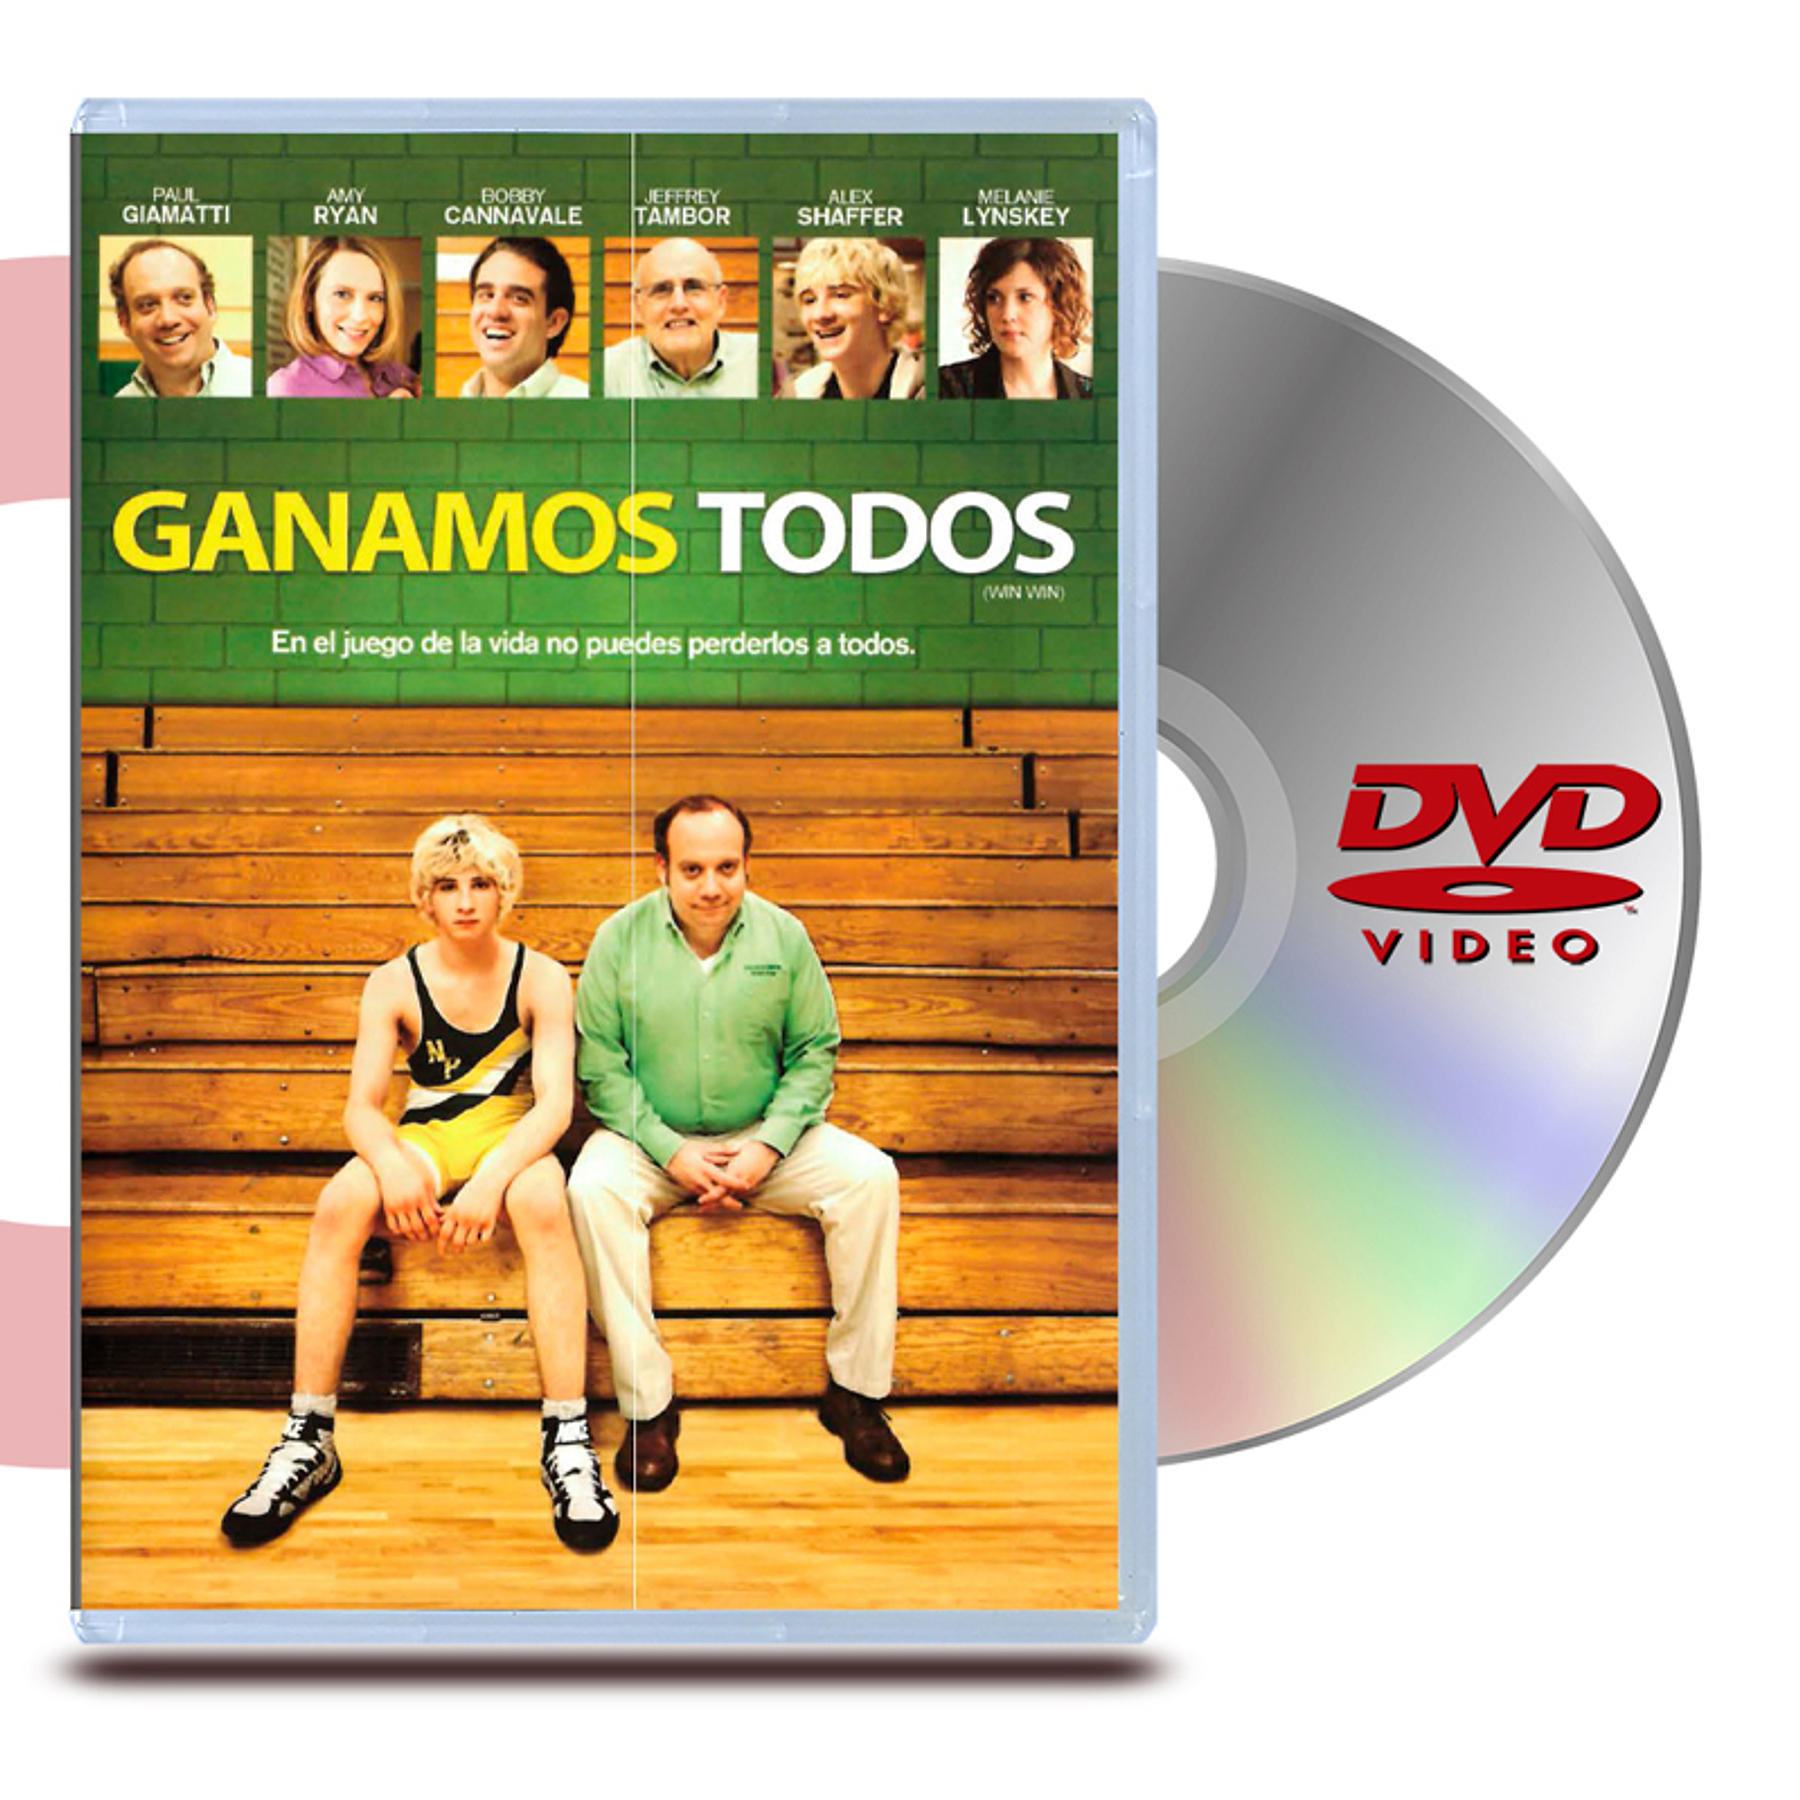 DVD GANAMOS TODOS